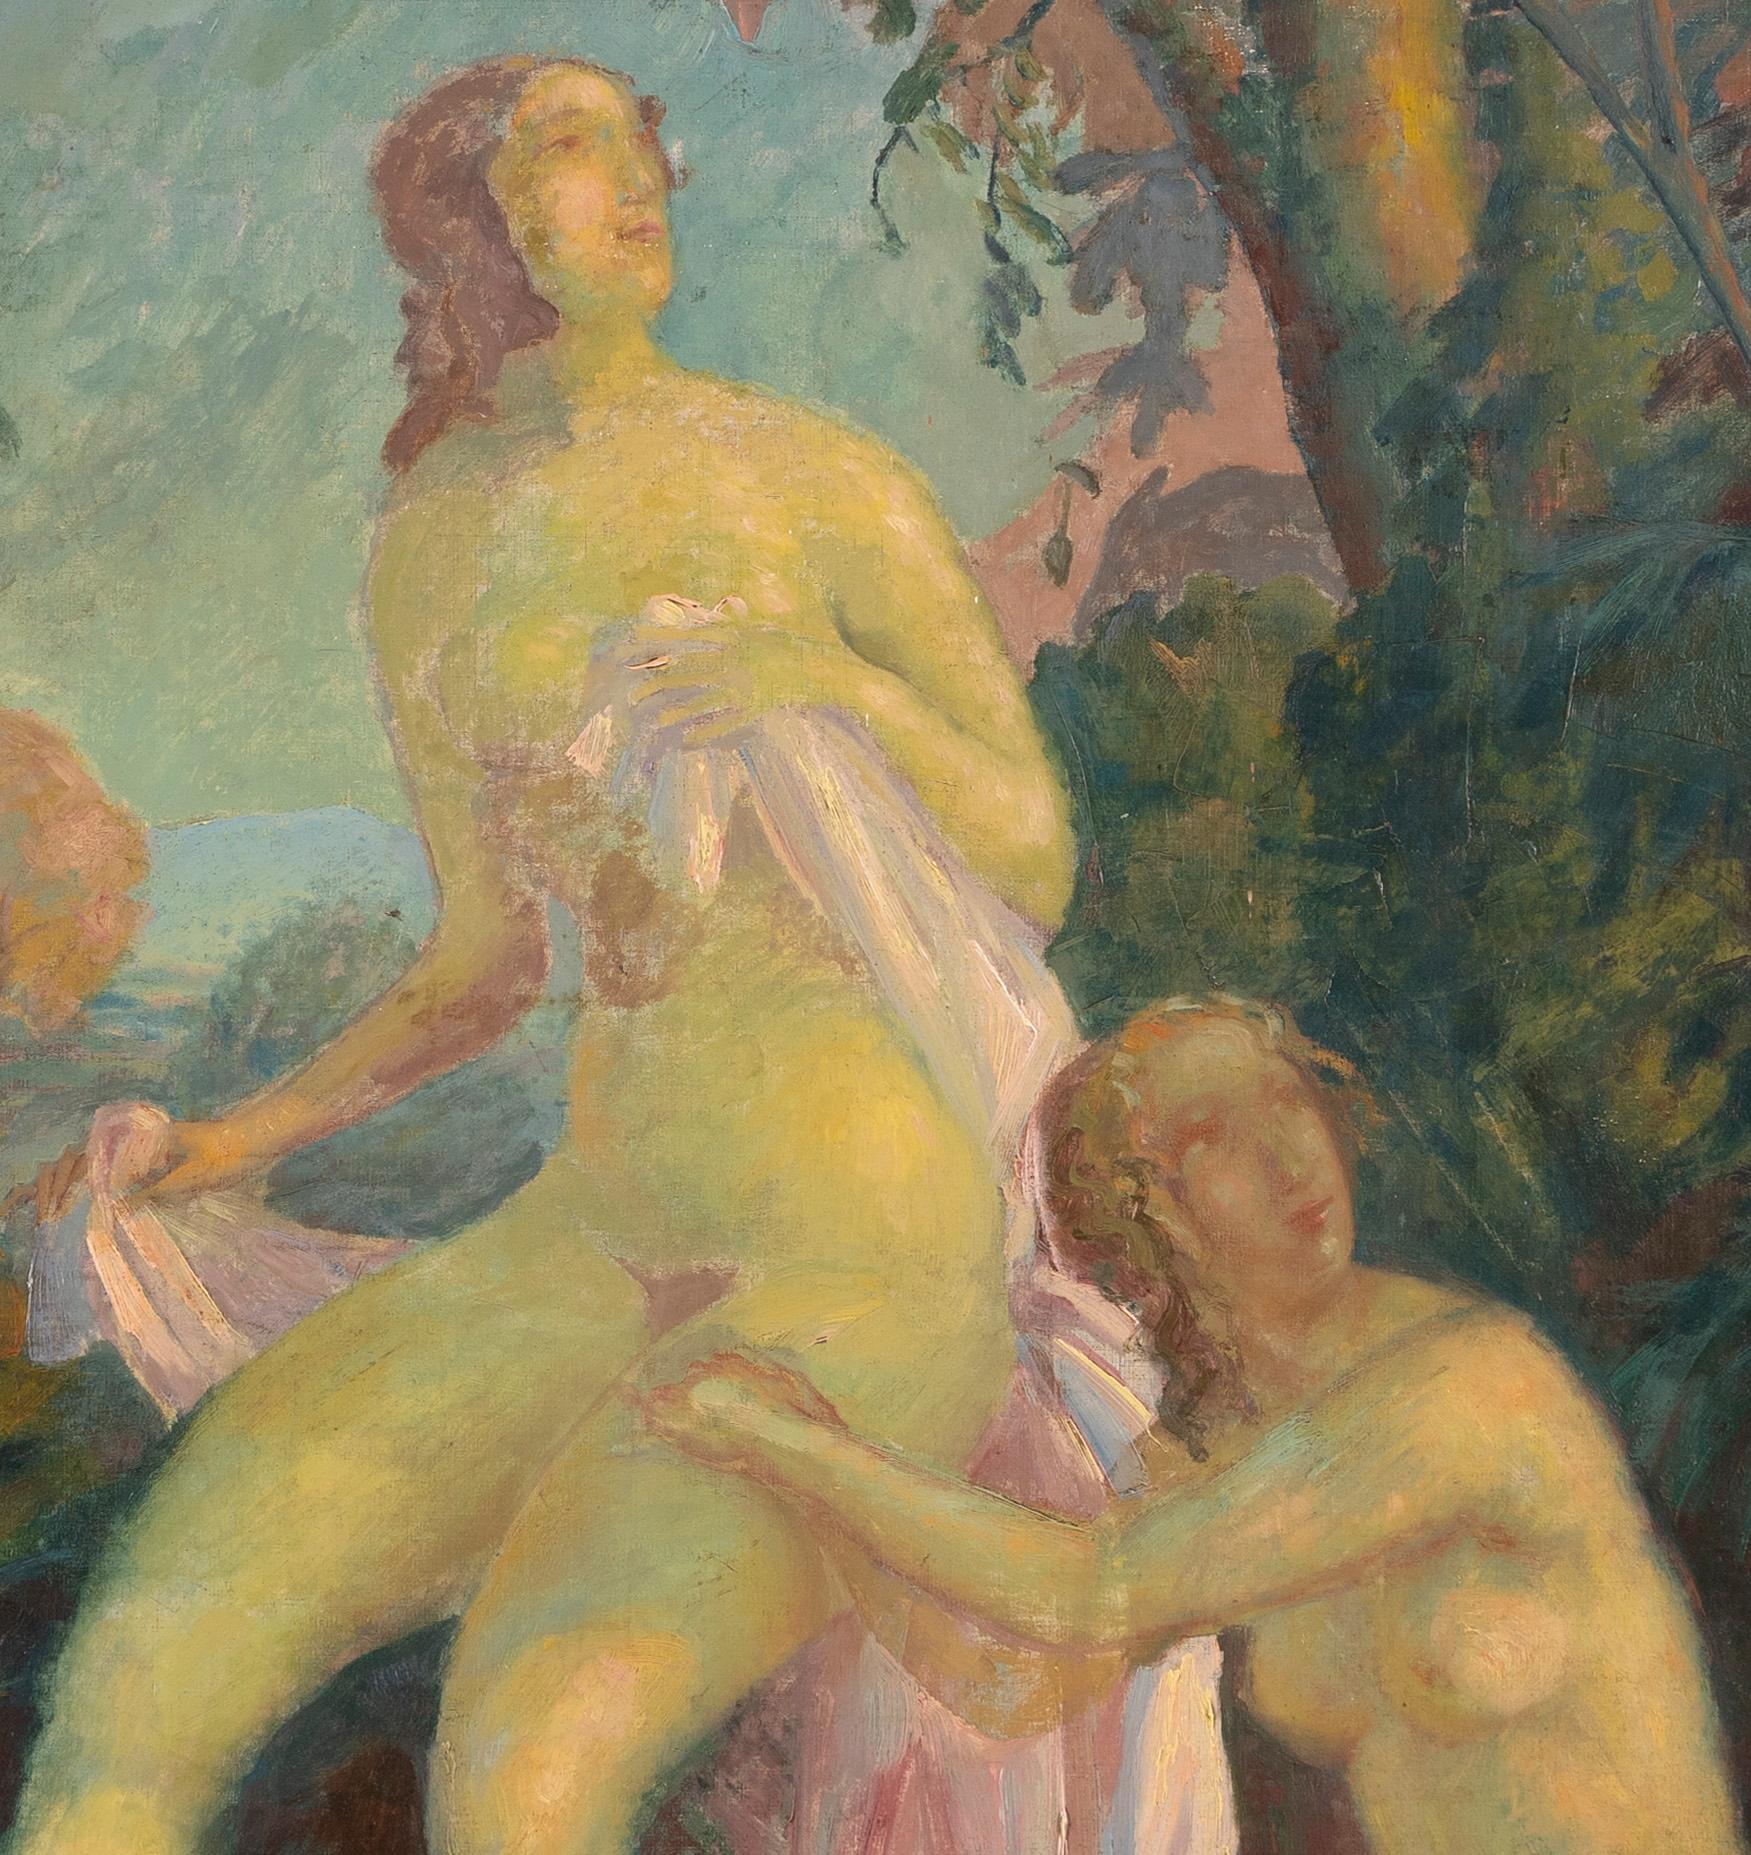 Antikes amerikanisches impressionistisches Gemälde von zwei nackten Badenden in einer Landschaft.  Öl auf Leinwand, um 1900.  Signiert unten rechts.  Bildgröße: 34L x 27H.  Untergebracht in einem Rahmen aus Gitlwood.